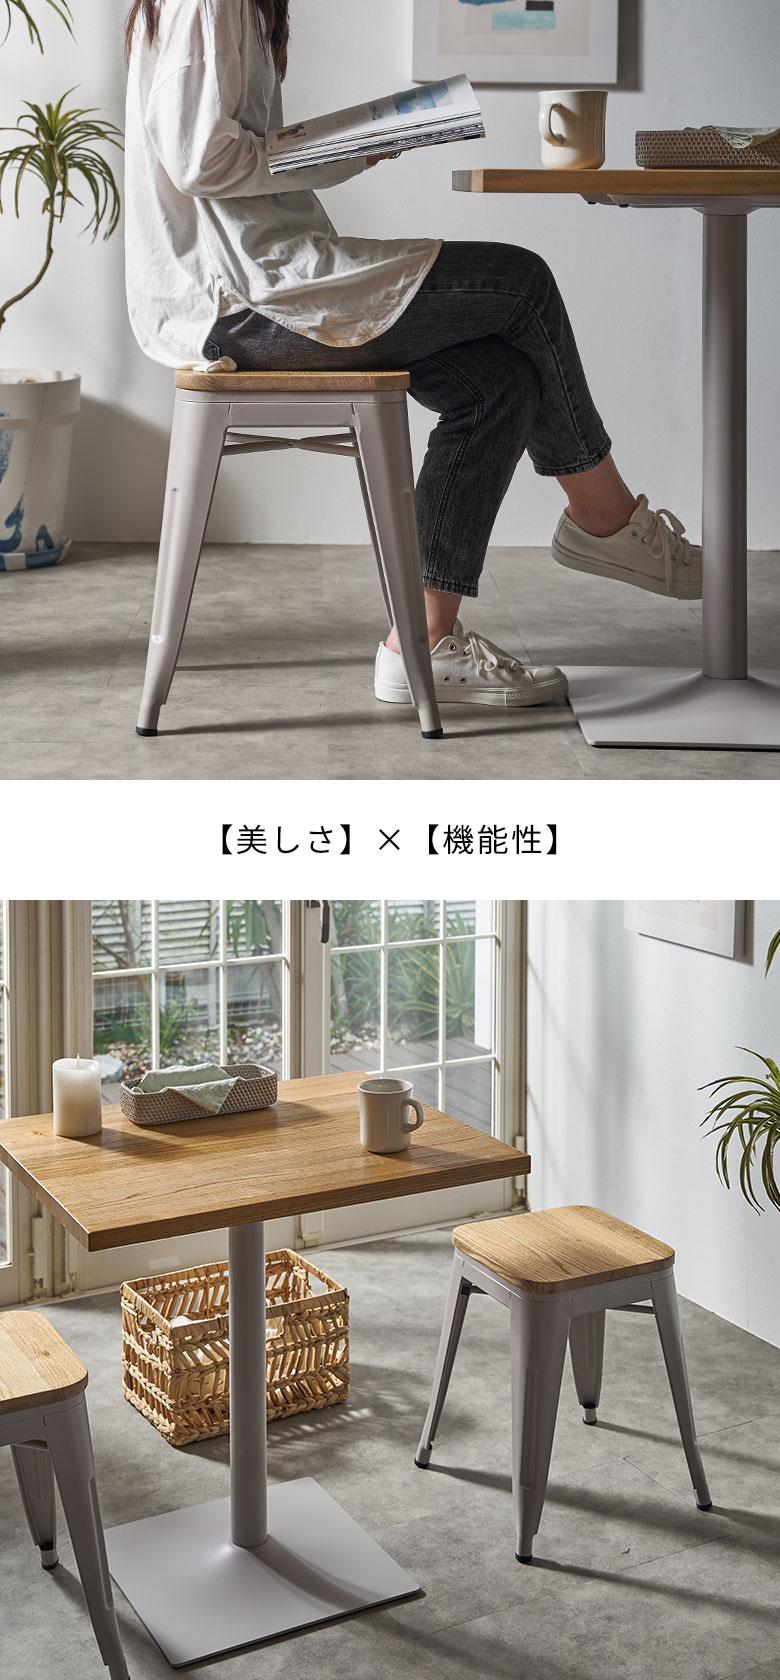 インダストリアルデザインの家具